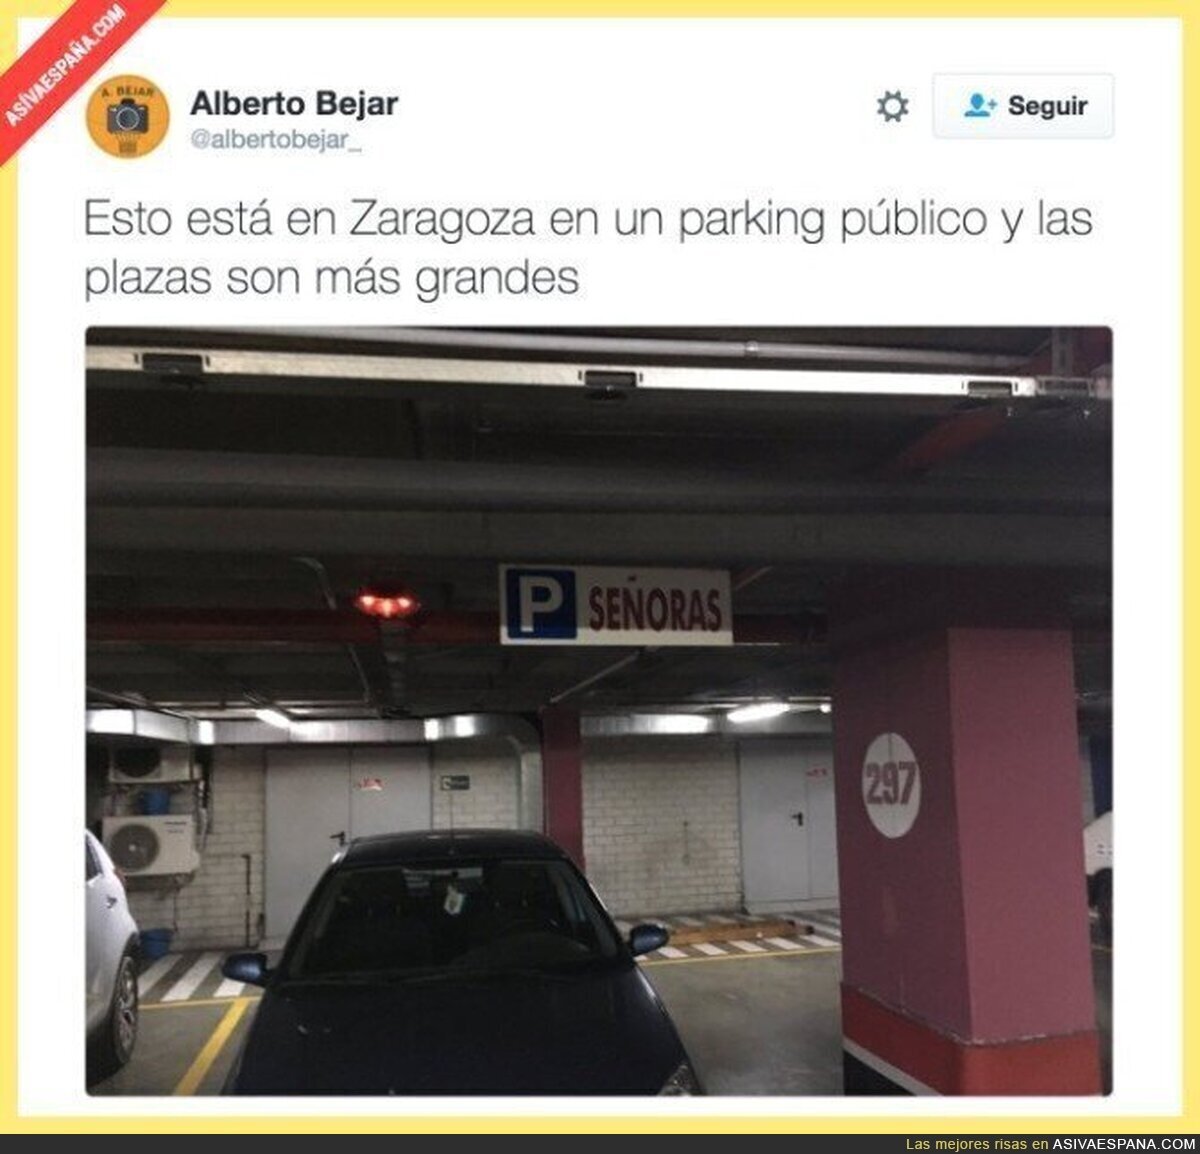 La sorpresa que te encuentras en un parking de Zaragoza...